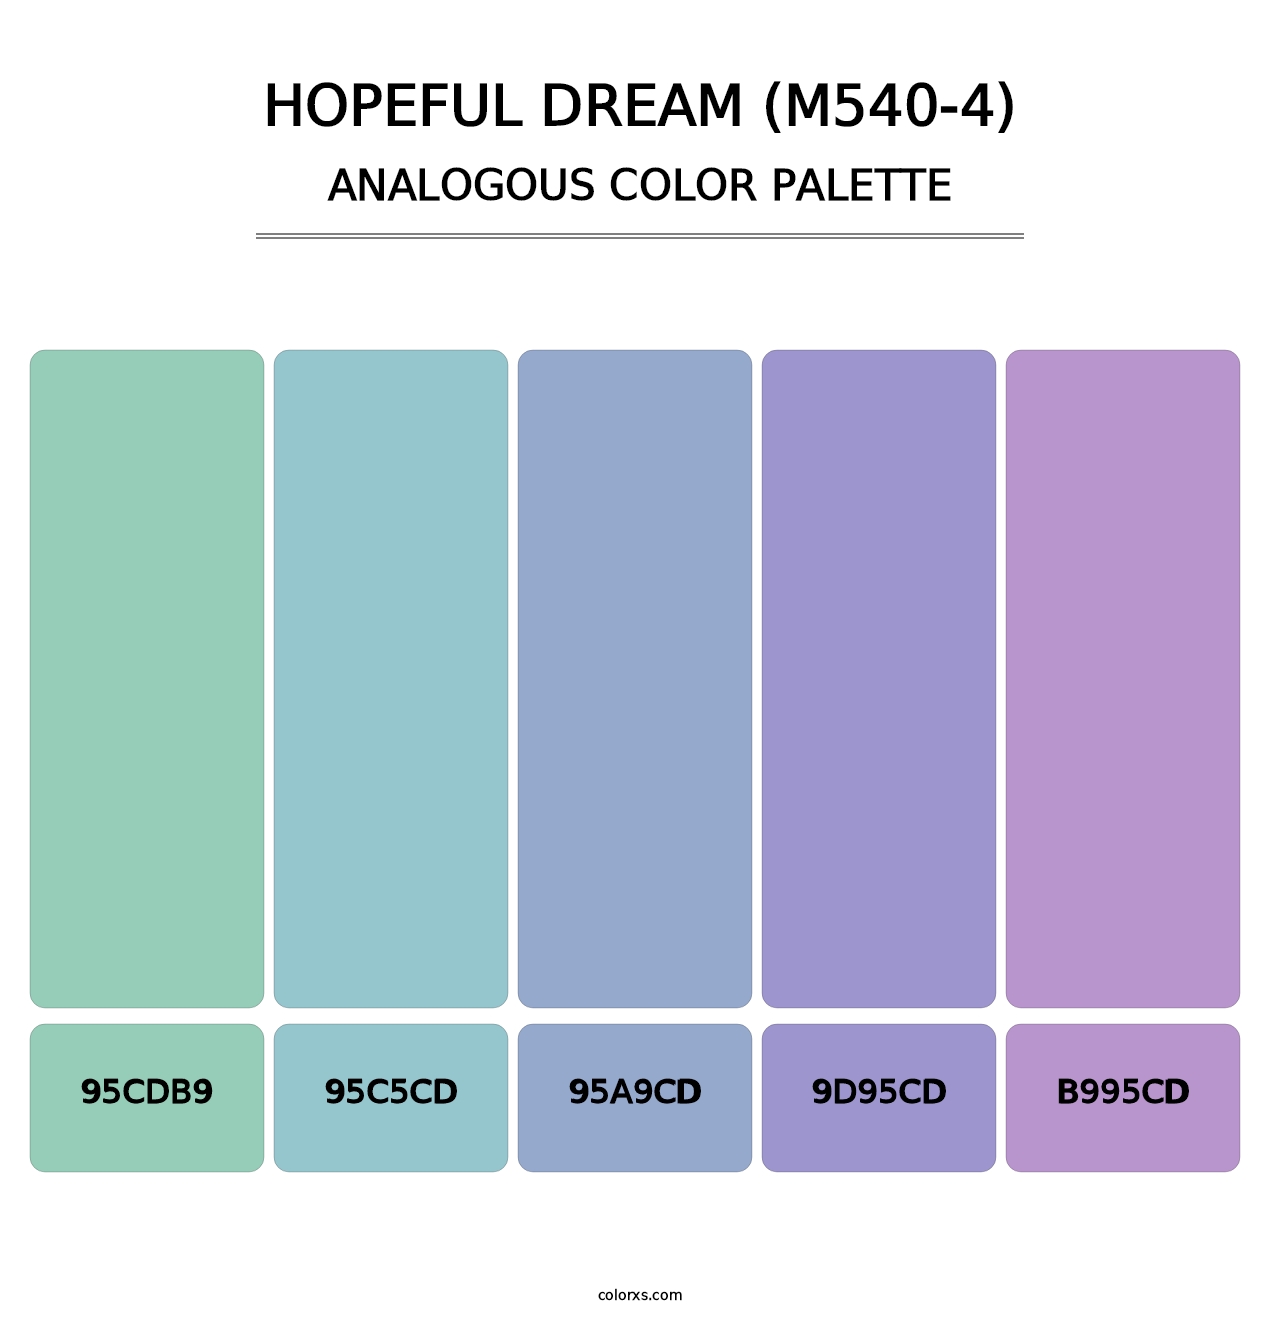 Hopeful Dream (M540-4) - Analogous Color Palette